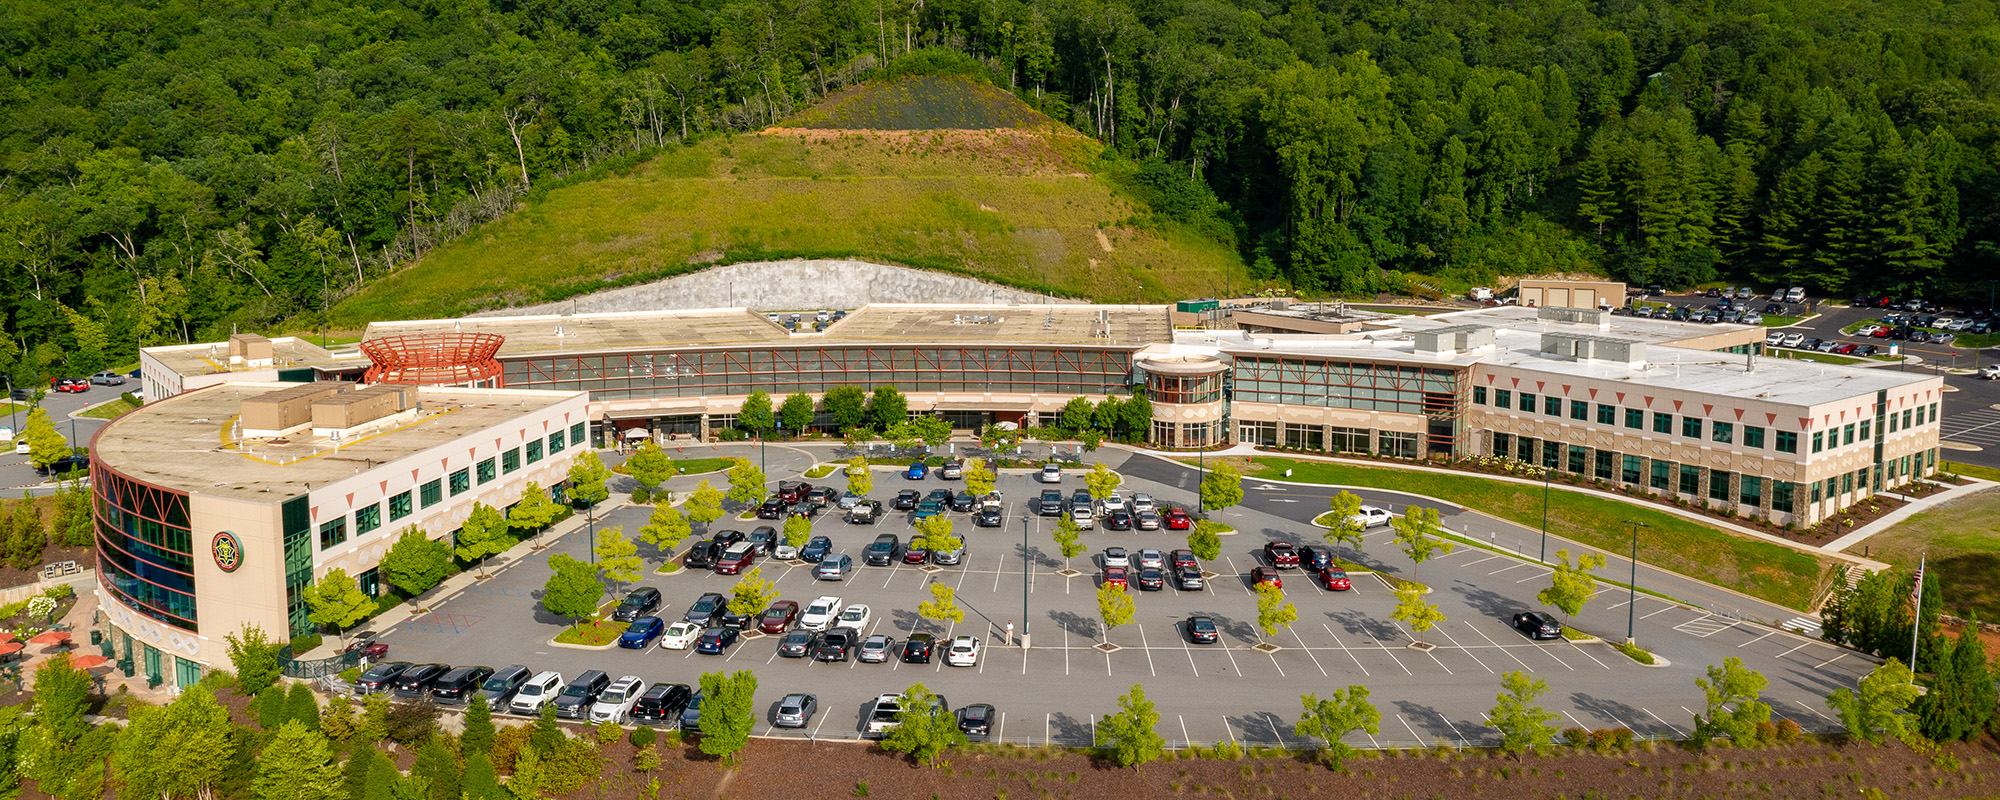 hospital campus aerial